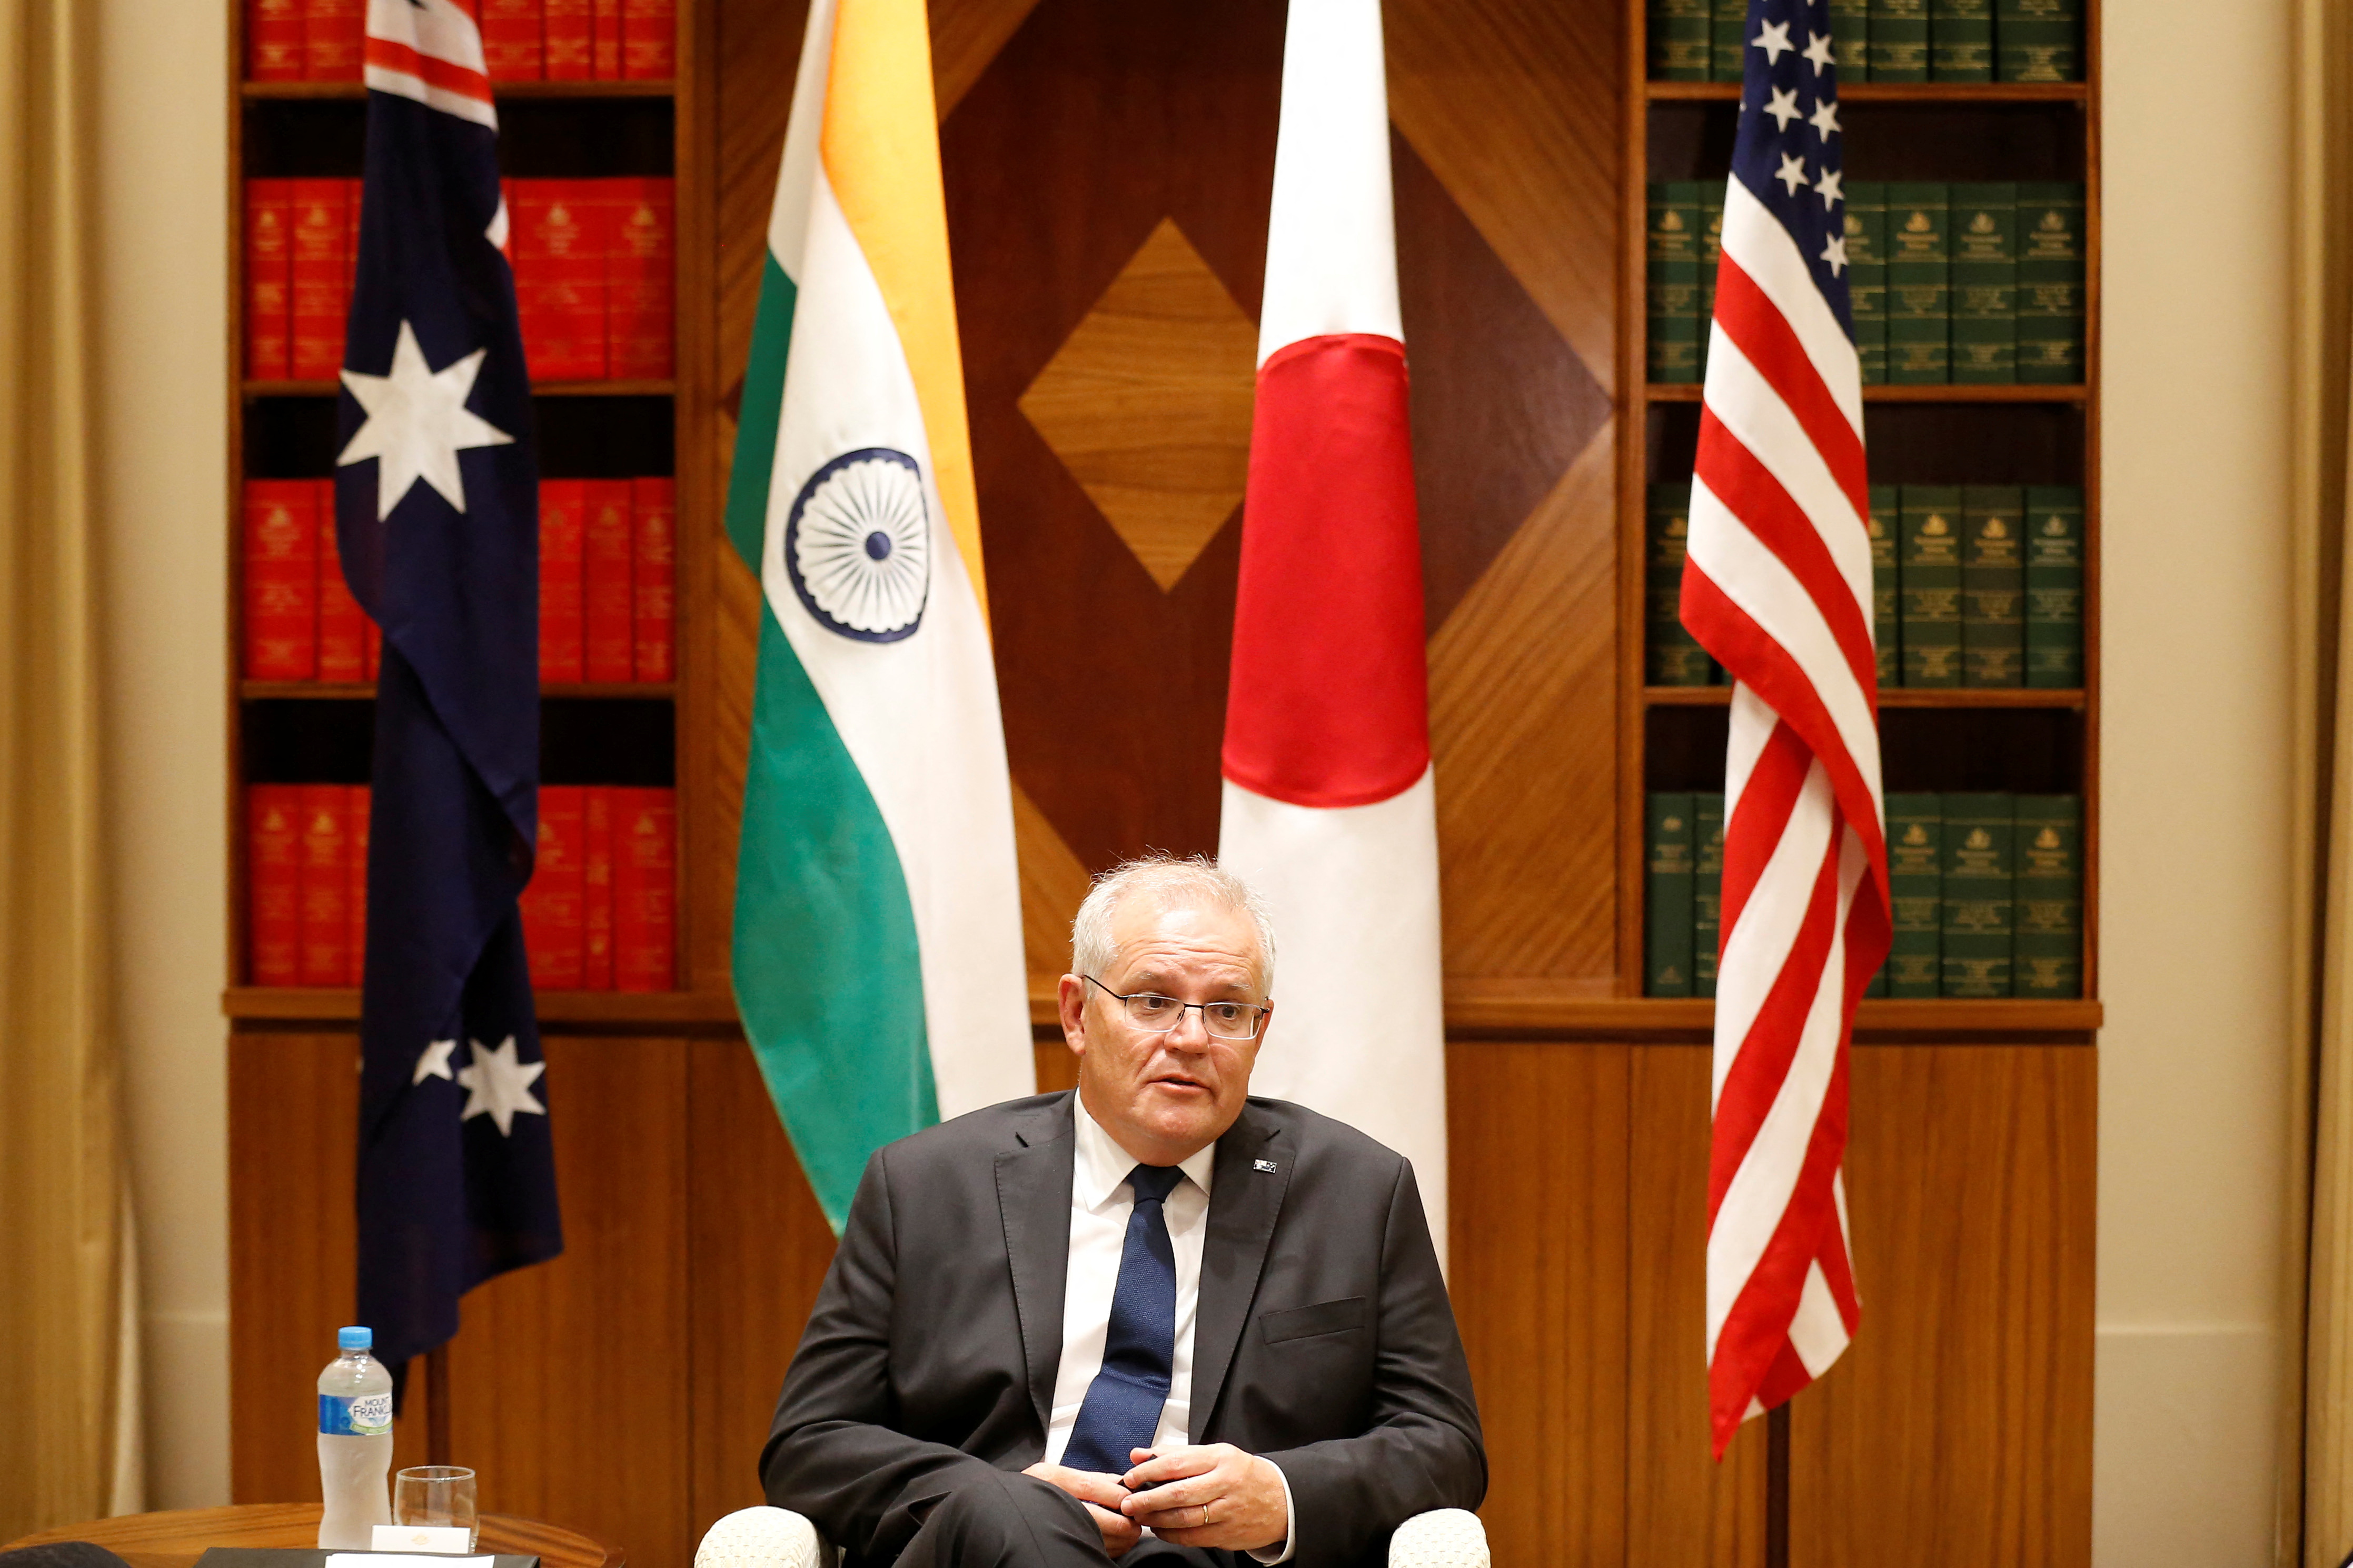 O primeiro-ministro australiano Scott Morrison fala à mídia no Escritório Parlamentar da Commonwealth de Melbourne em Melbourne, Austrália, em 11 de fevereiro de 2022.  Dorian Trainer / Pool via REUTERS